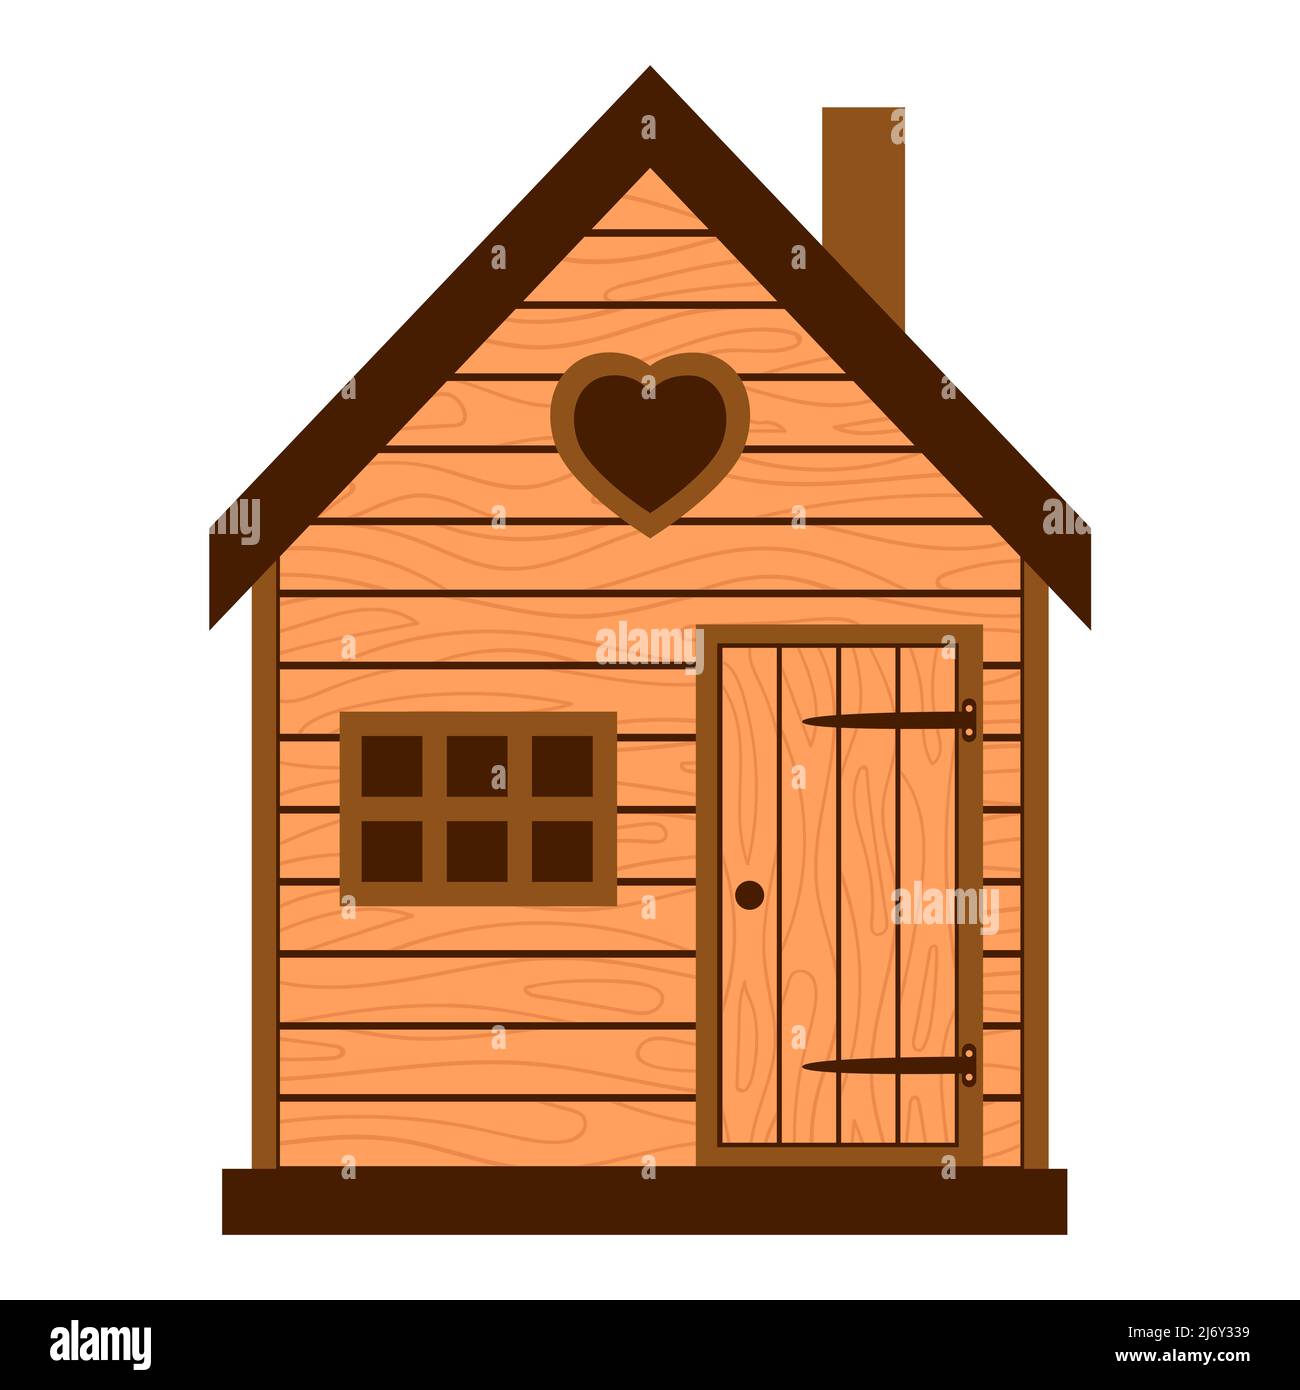 Holzscheune, rustikales Haus mit Fenster und geschlossener Tür. Landhaus, Scheune. Ein Kinderhaus. Vektorgrafik in einem flachen Stil isoliert auf einem Whit Stock Vektor